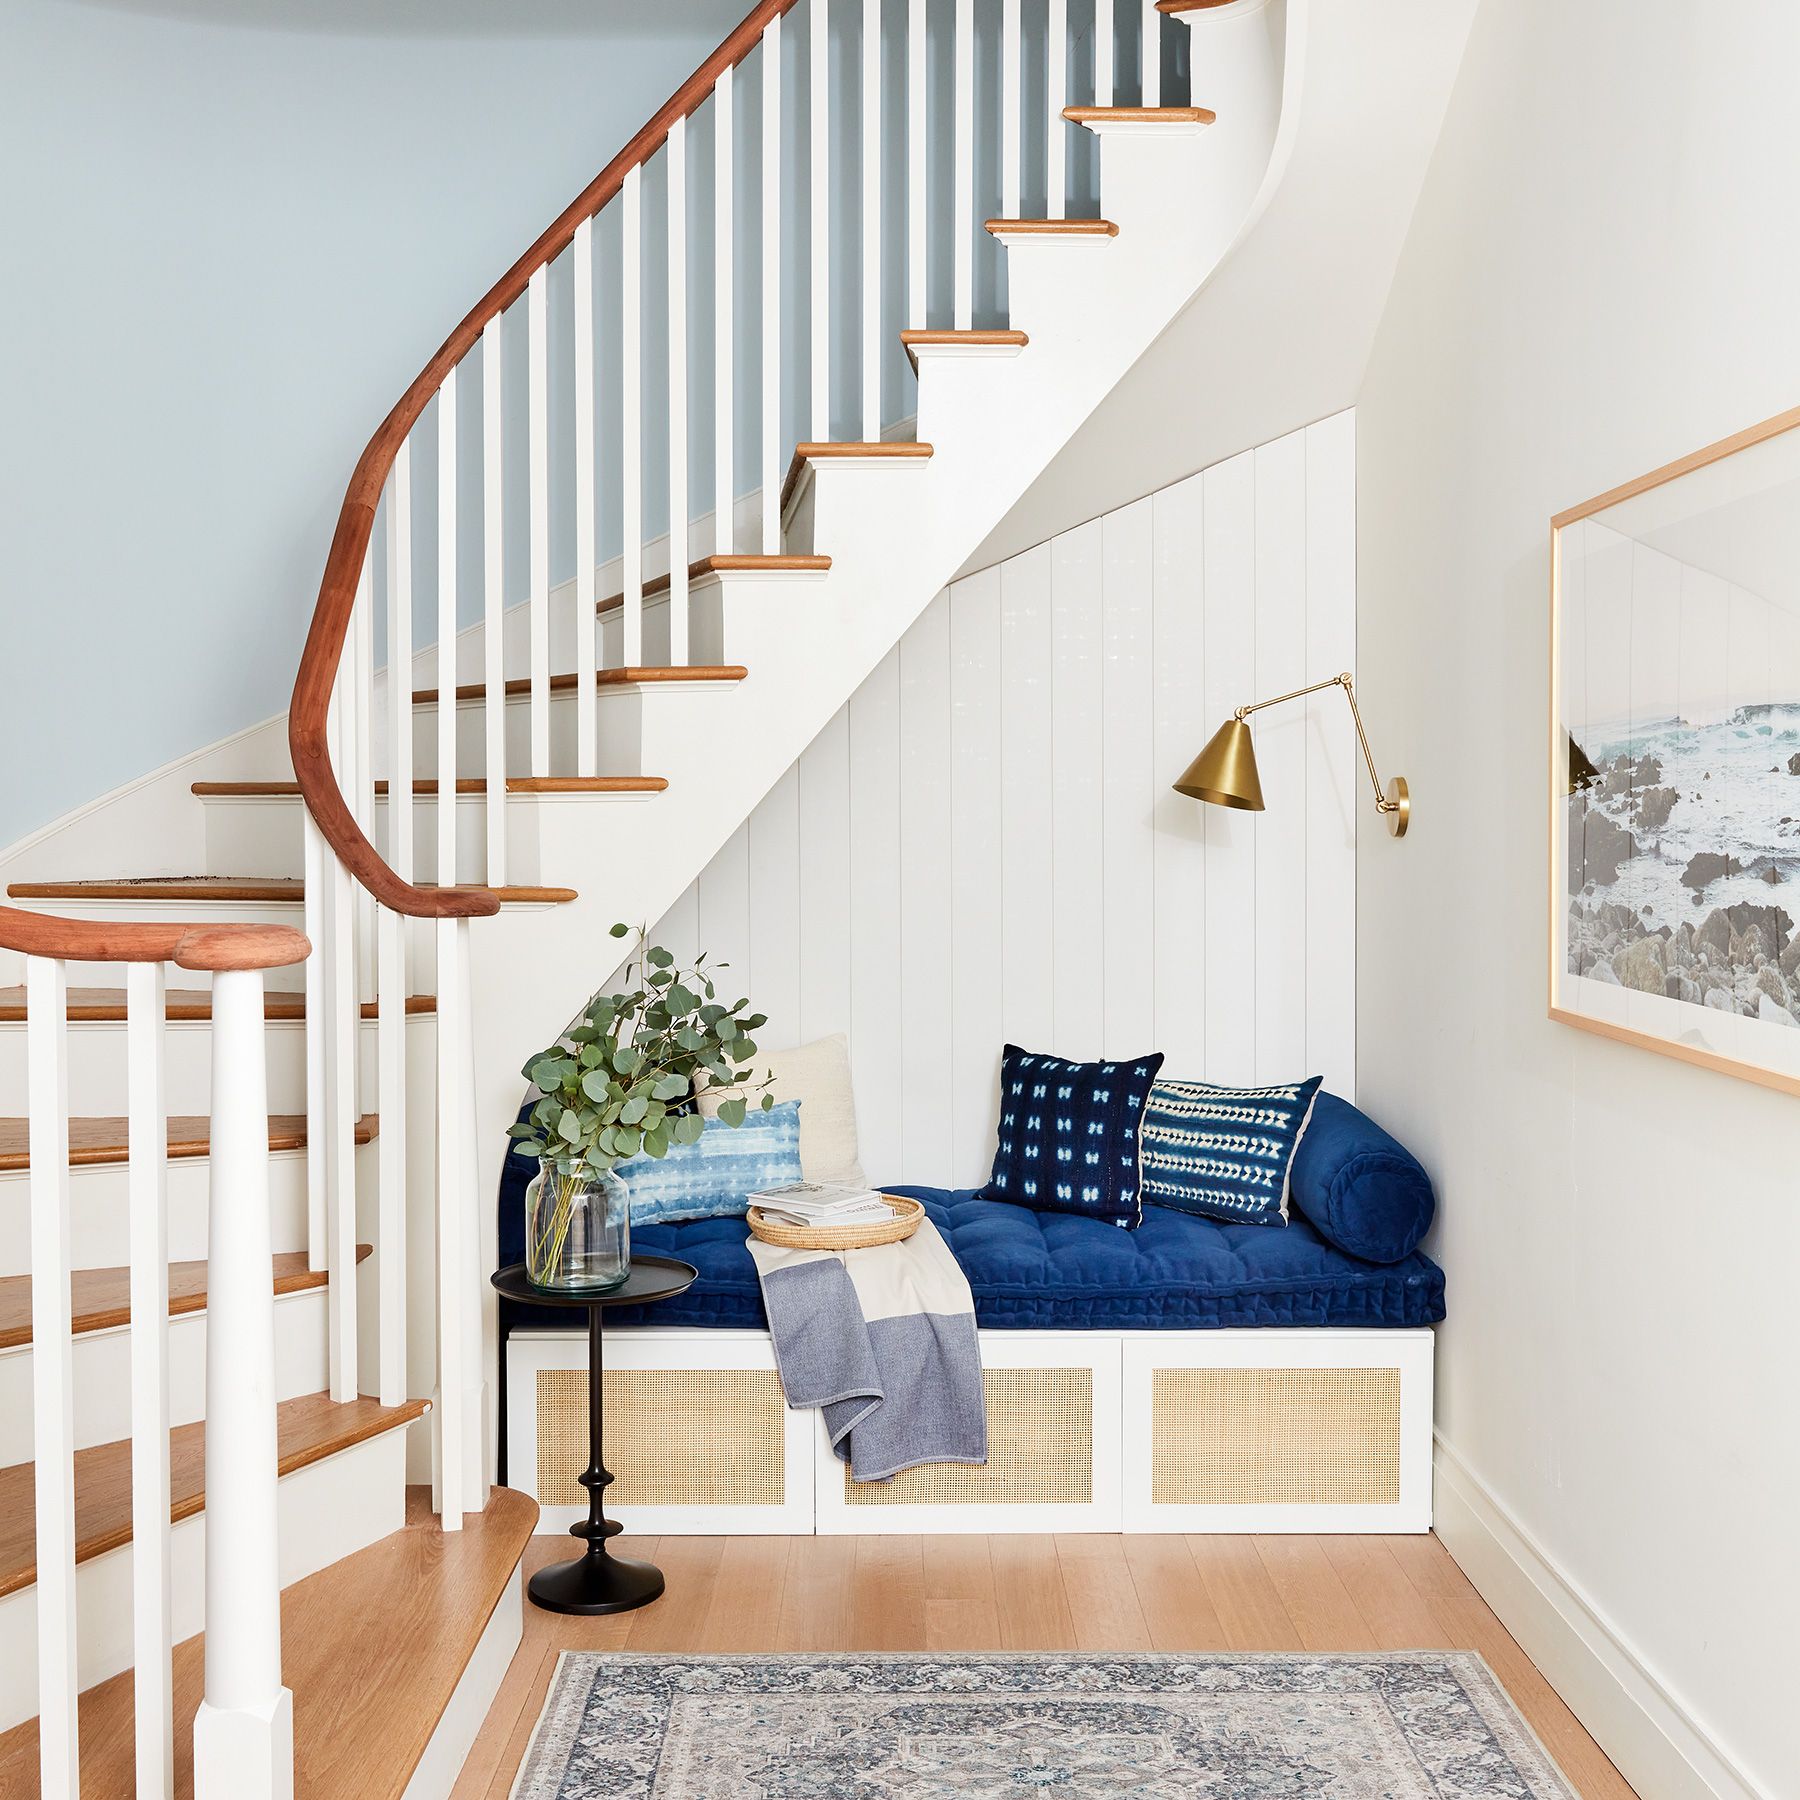 2020 Real Simple Home Tour: Lépcsők hajózással